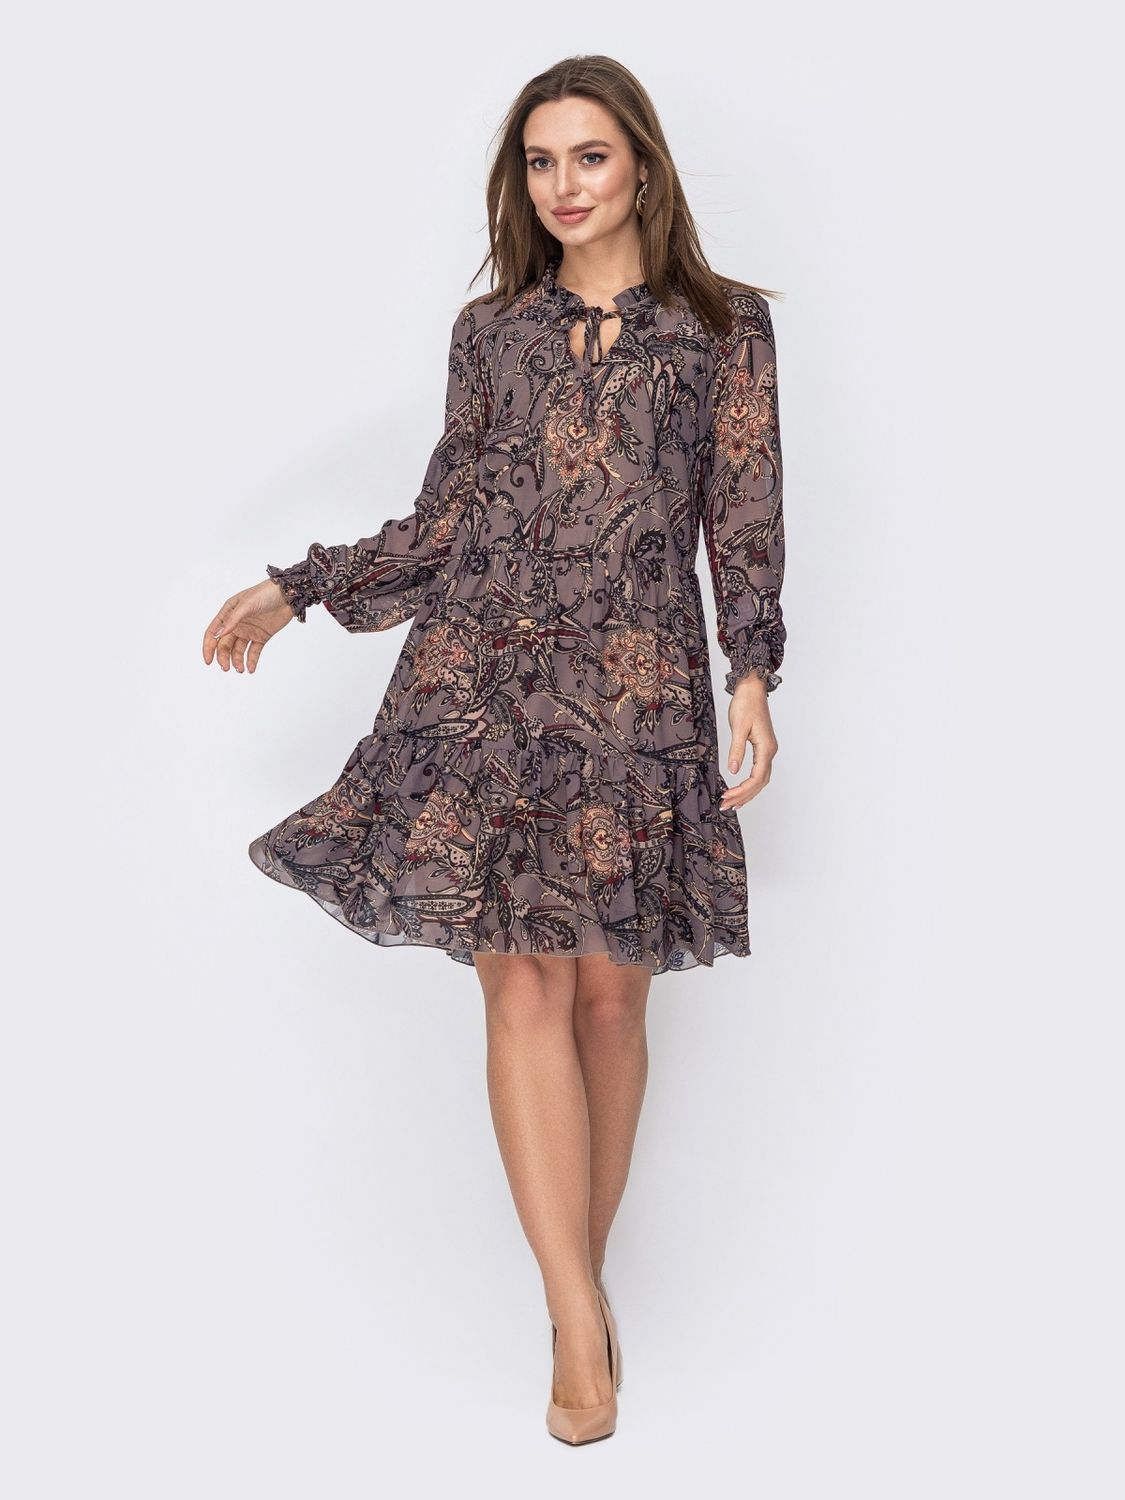 Шифоновое платье коричневого цвета с широким воланом - фото